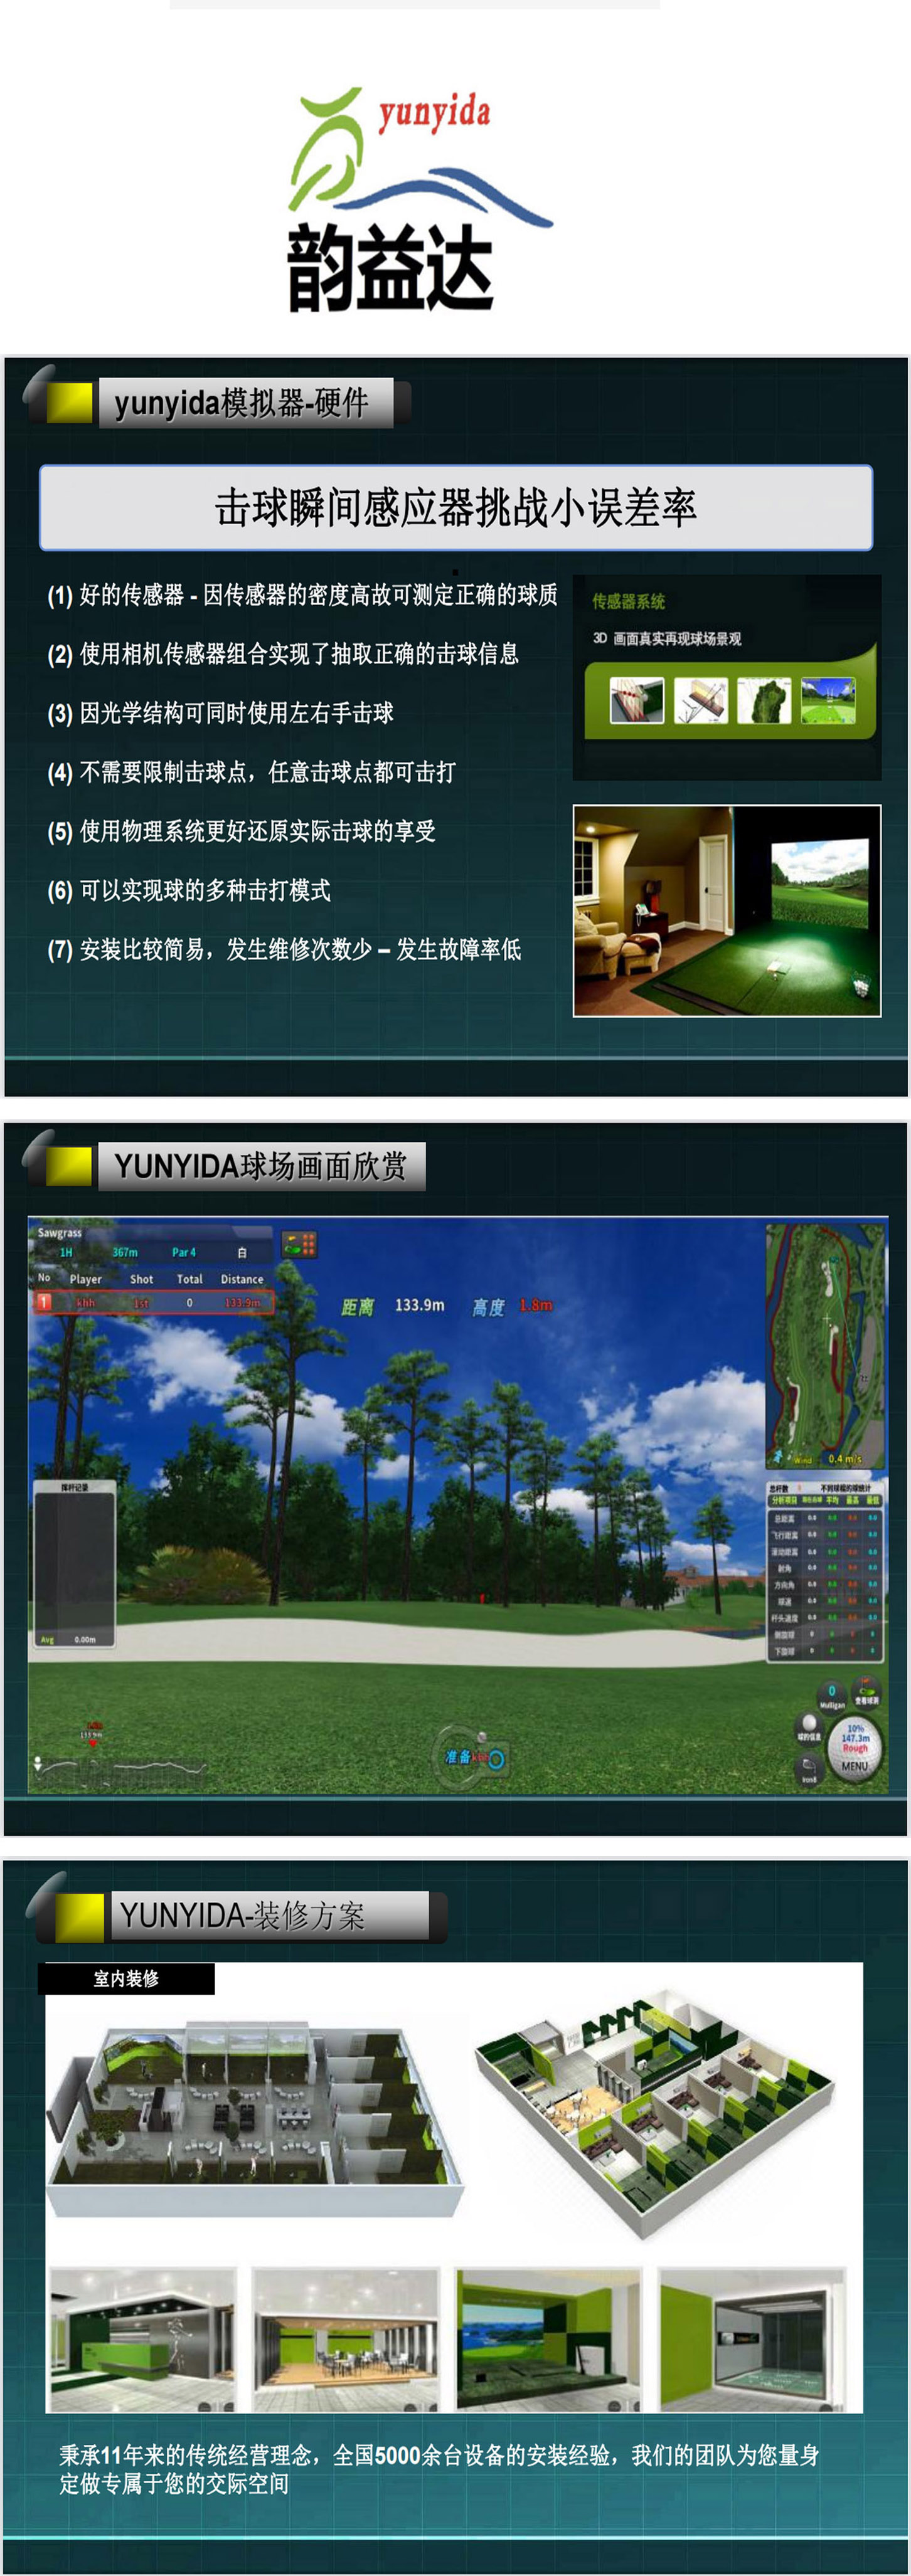 模拟高尔夫球场系统 01.jpg